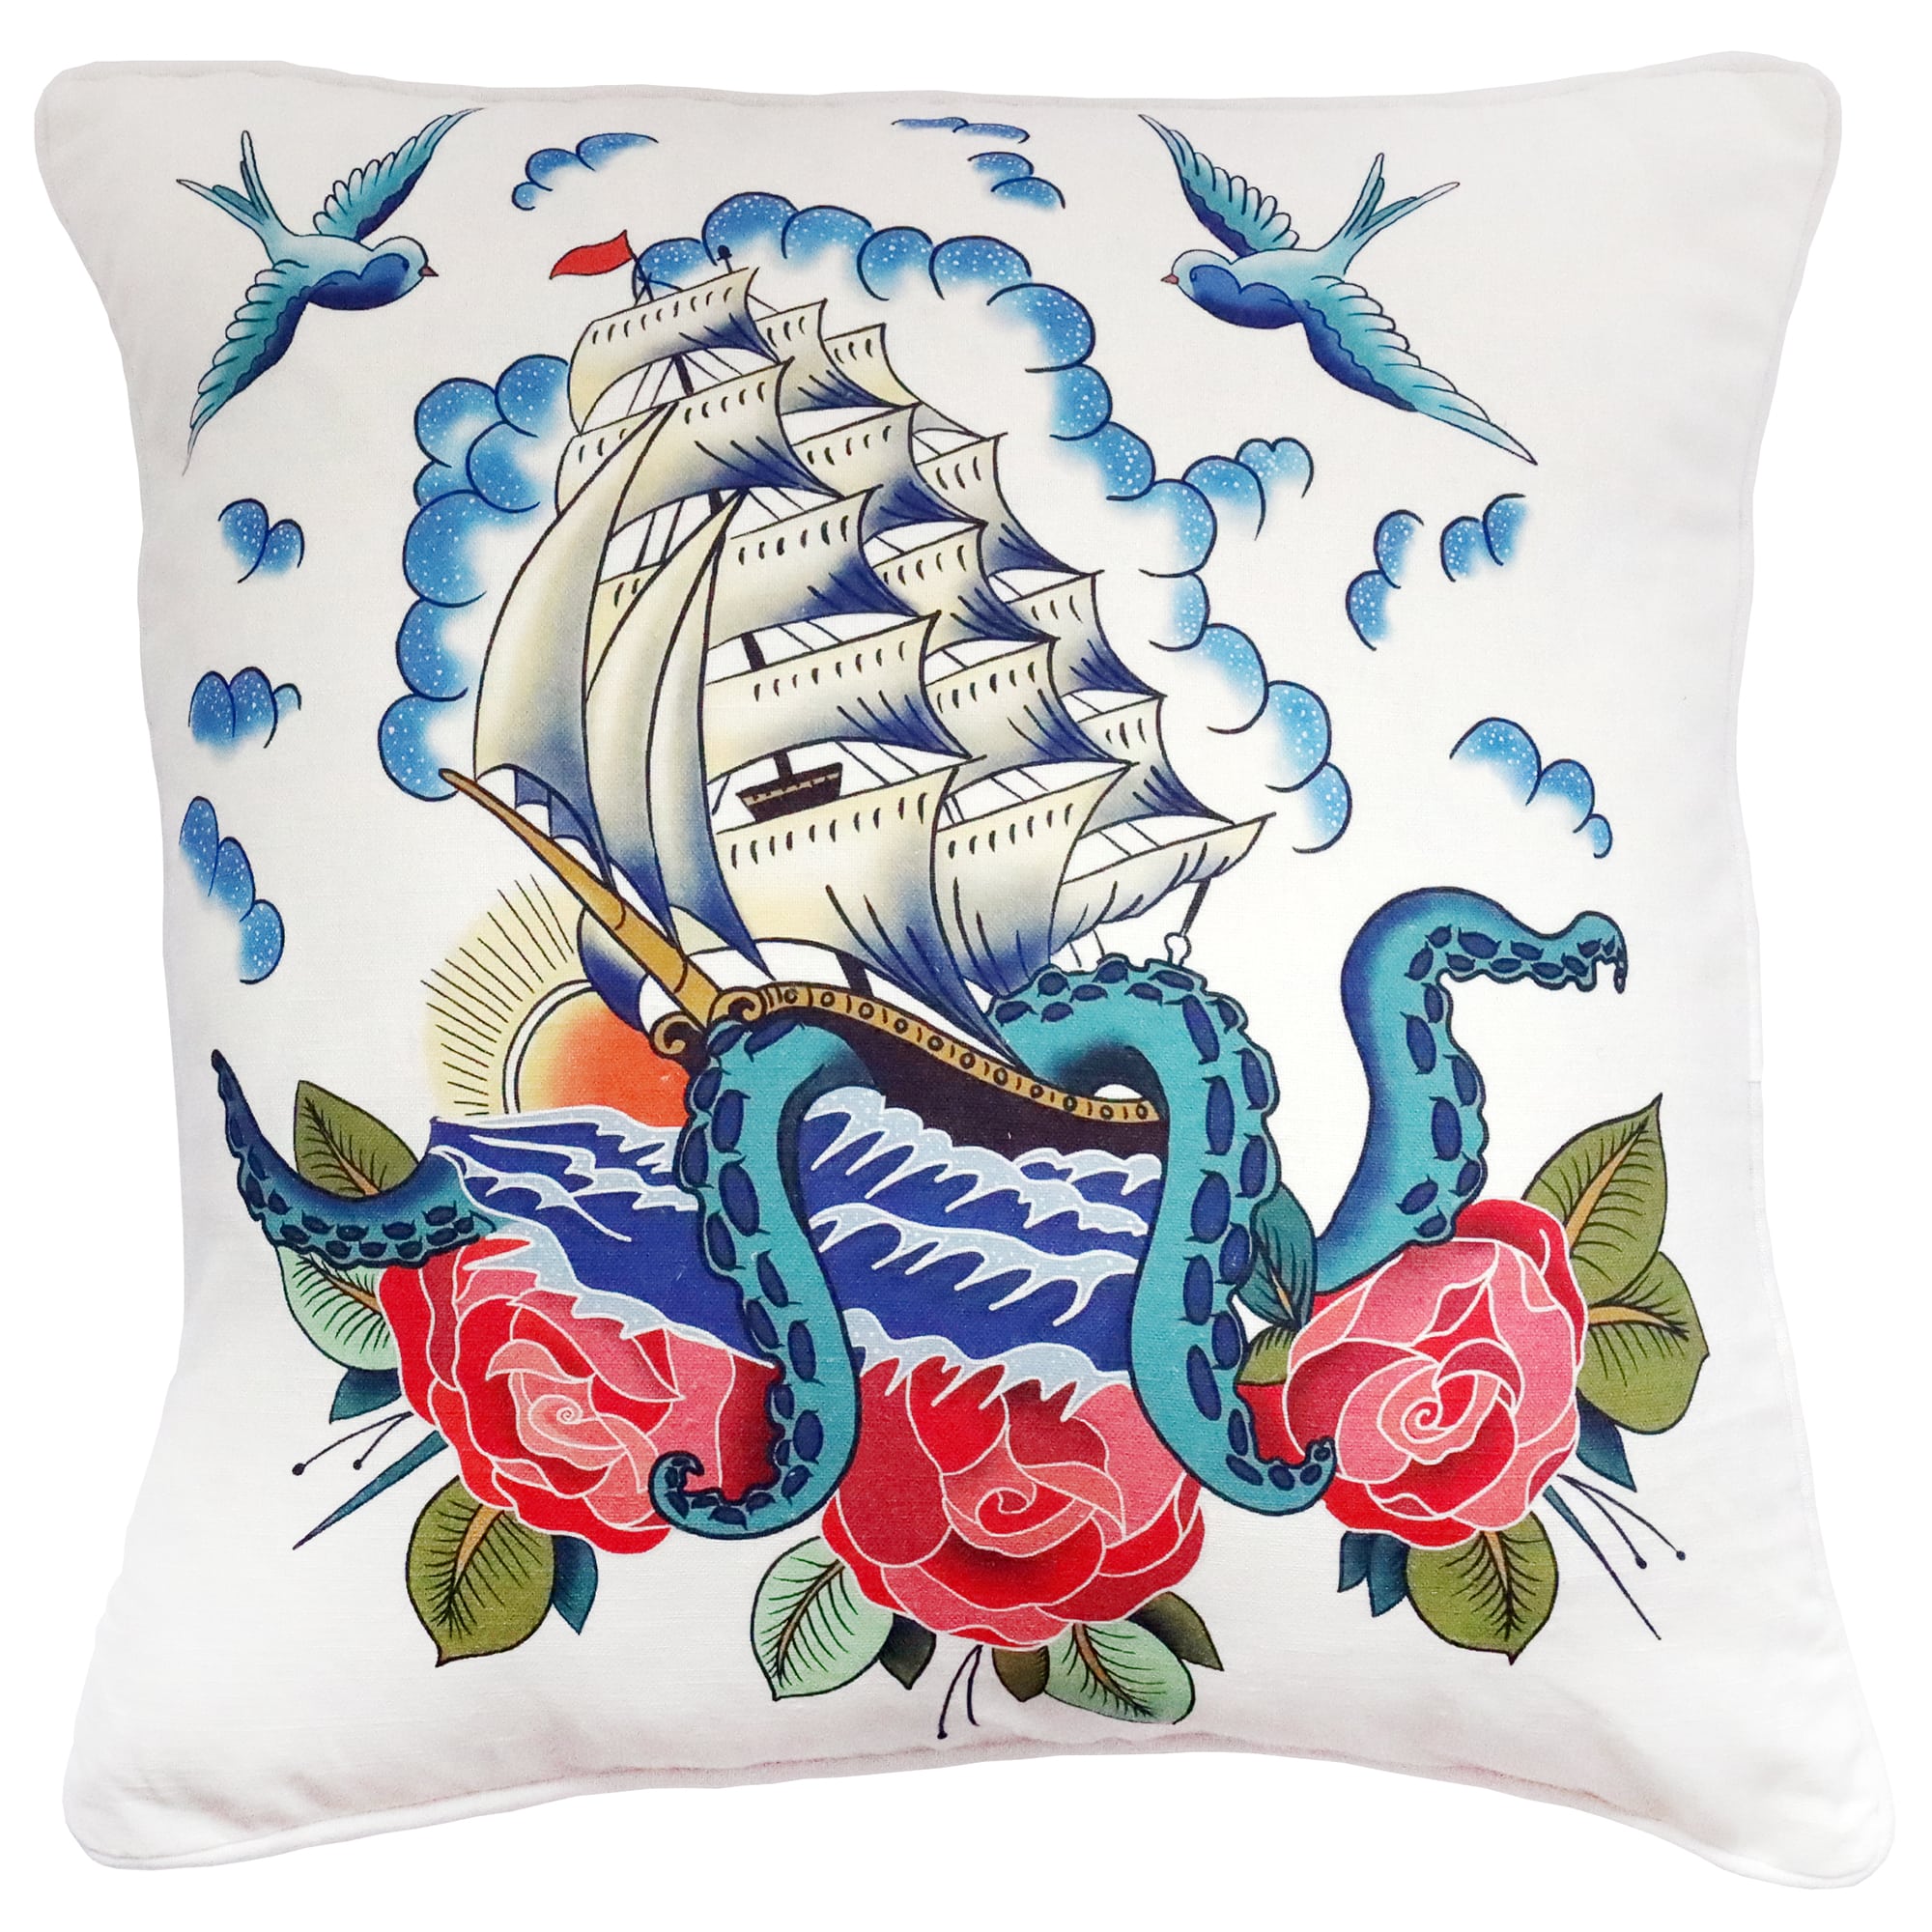 Ship & Kraken Cushion Cover